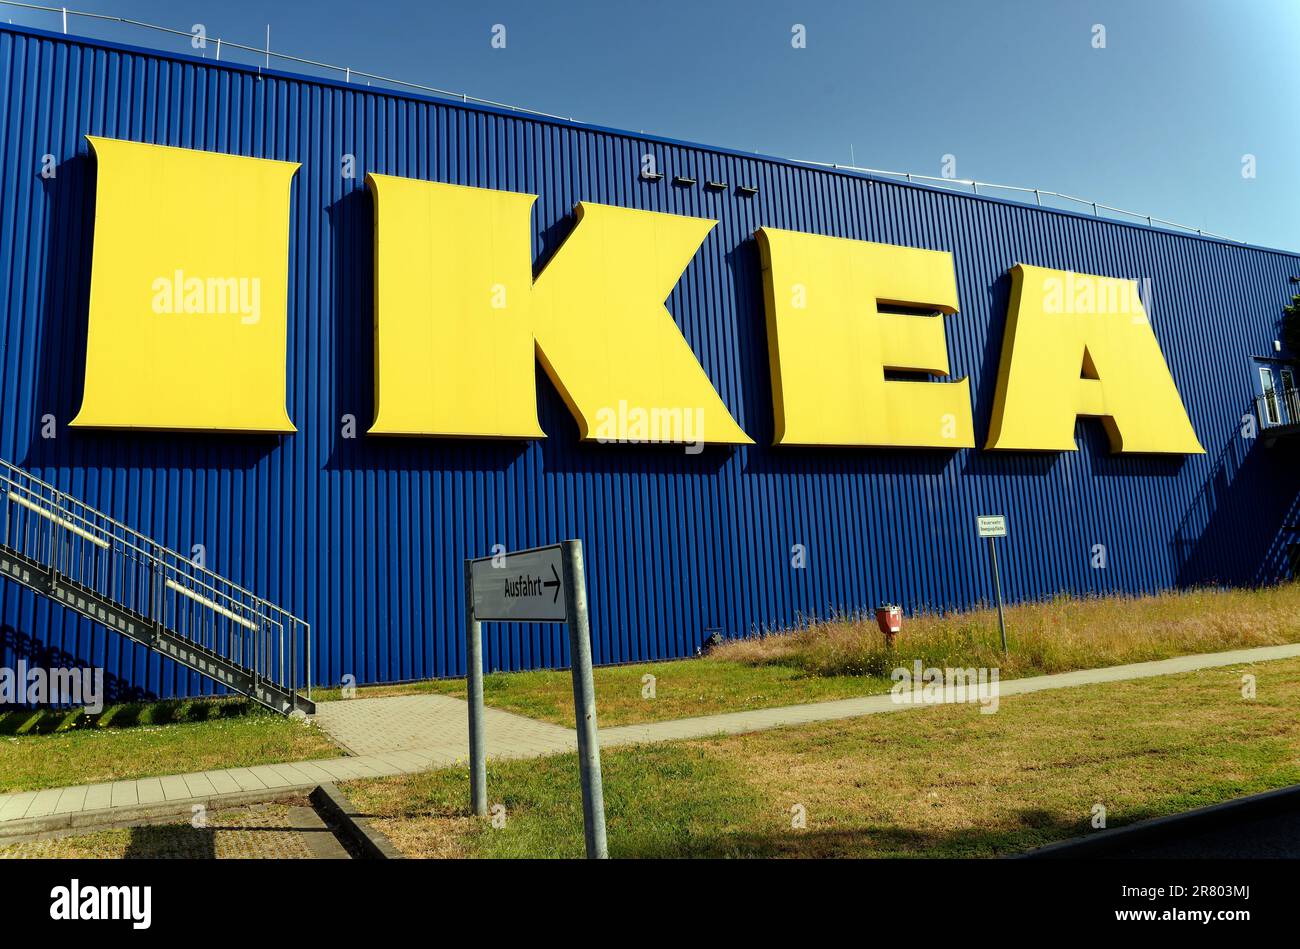 Foto simbolica del commercio al dettaglio, logo aziendale del rivenditore di mobili Ikea sulla facciata Foto Stock